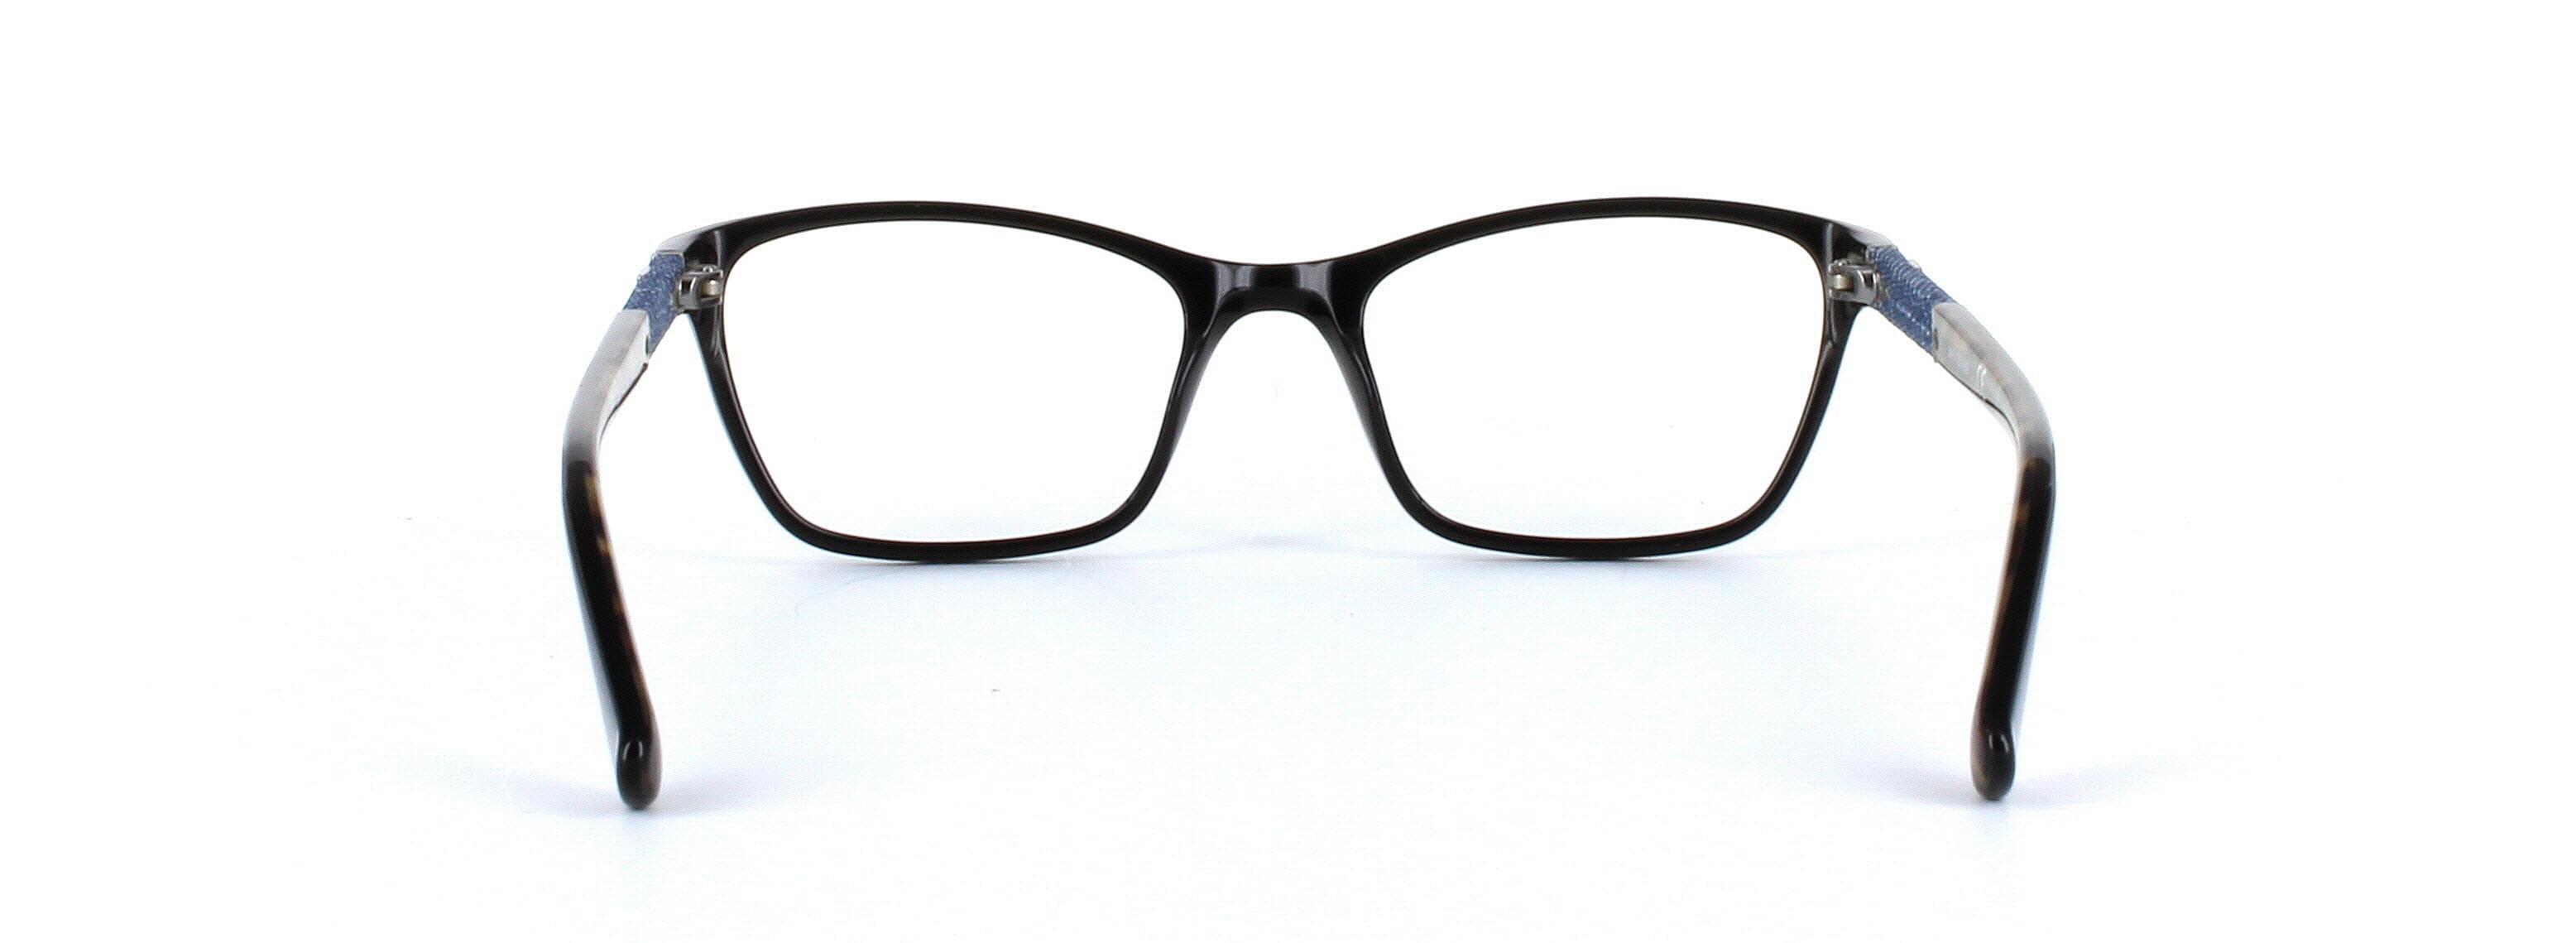 GUESS (GU2594-001) Black Full Rim Rectangular Acetate Glasses - Image View 3